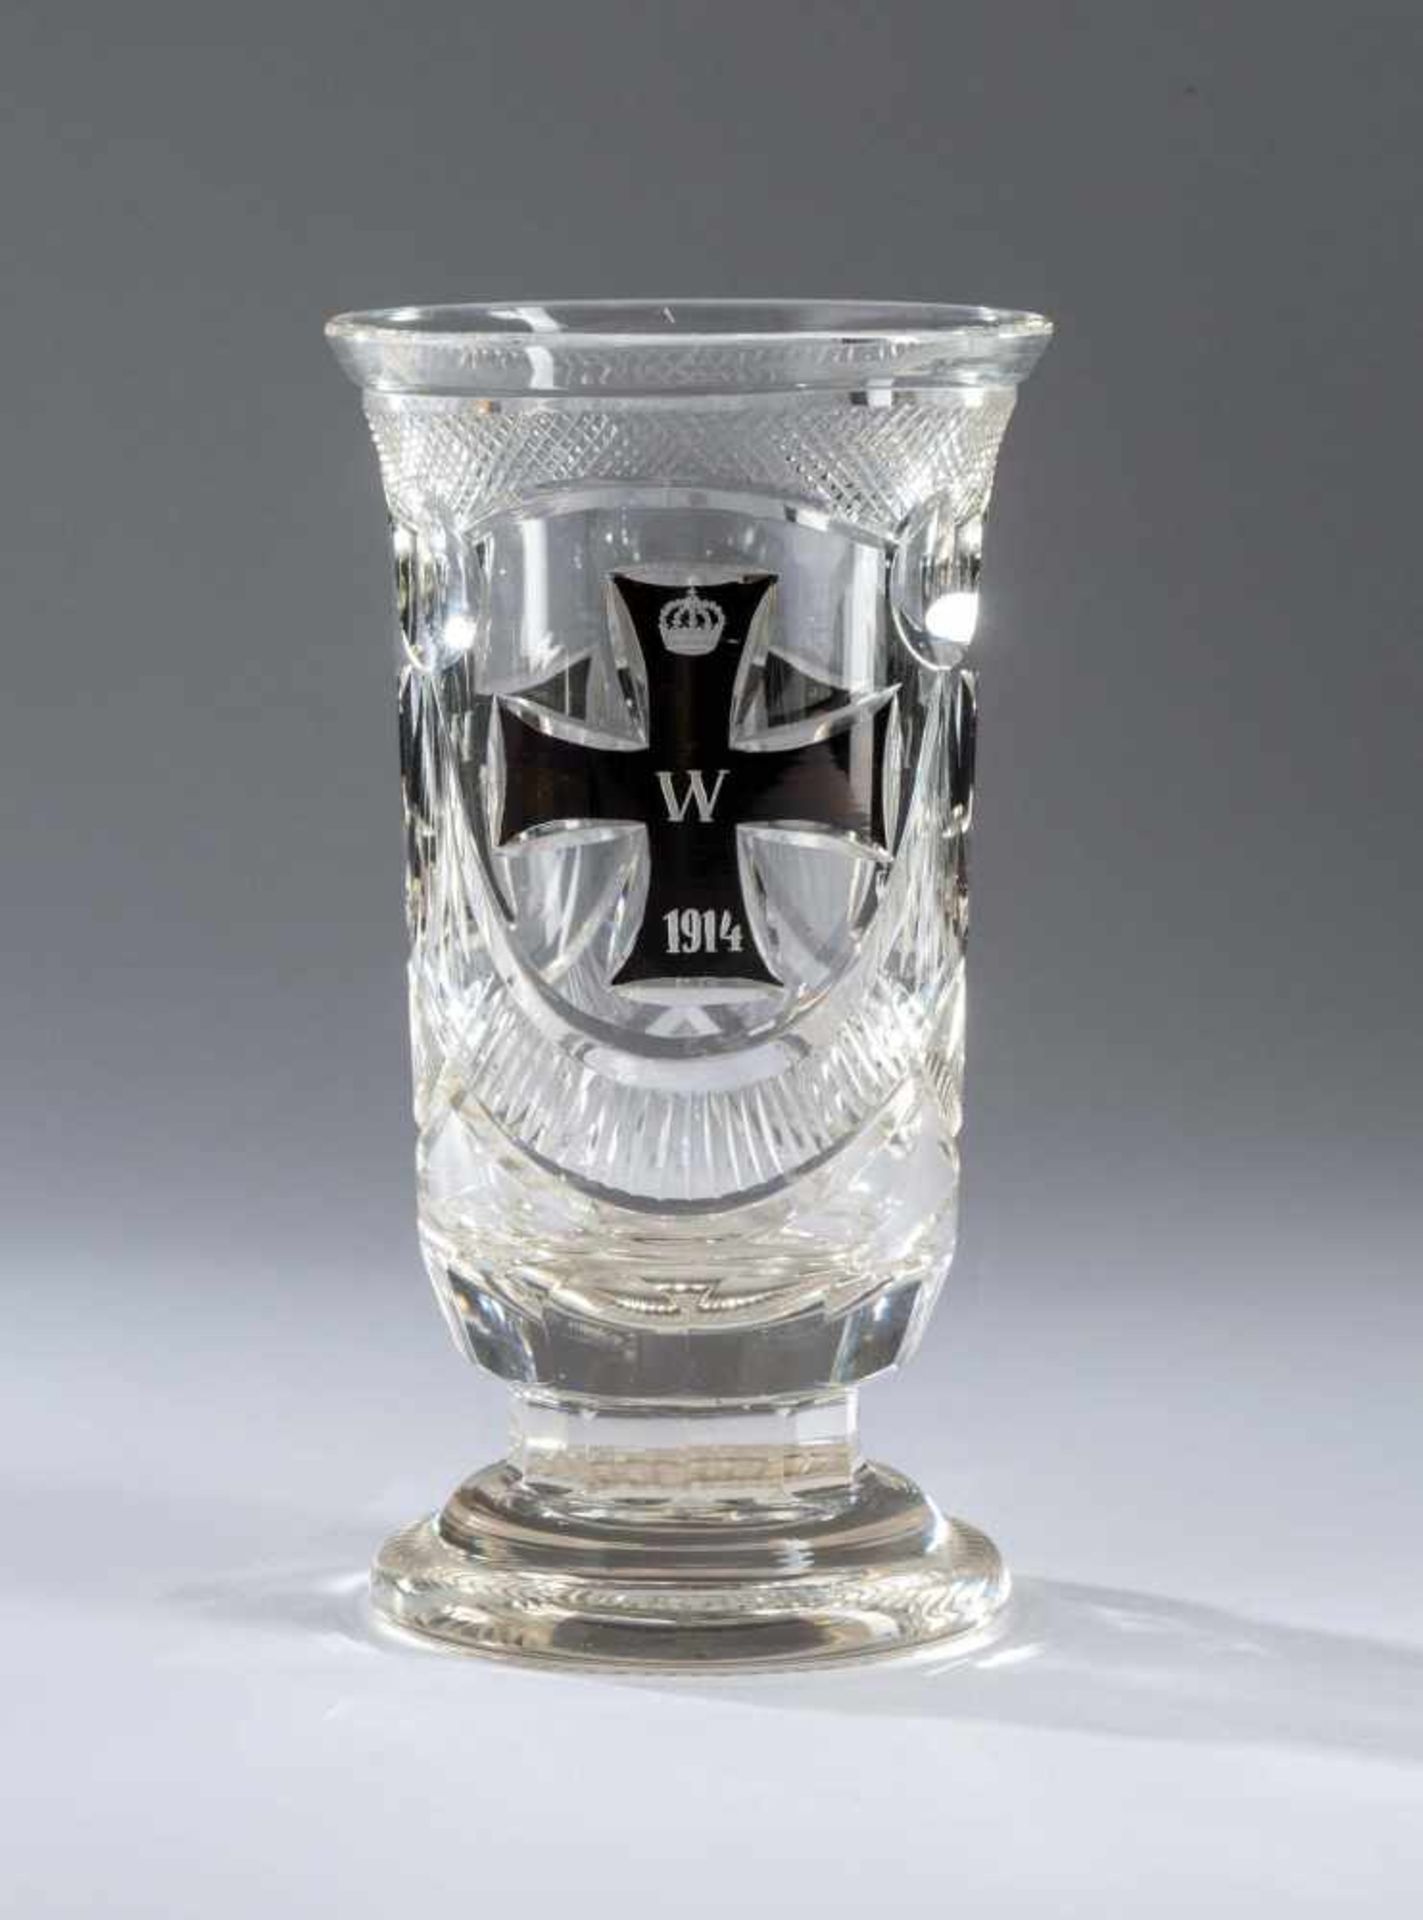 Patriotisches Trinkglas mit Eisernem Kreuz 1914, 1915, 1916. Farbloses Glas mit fein geschliffenen